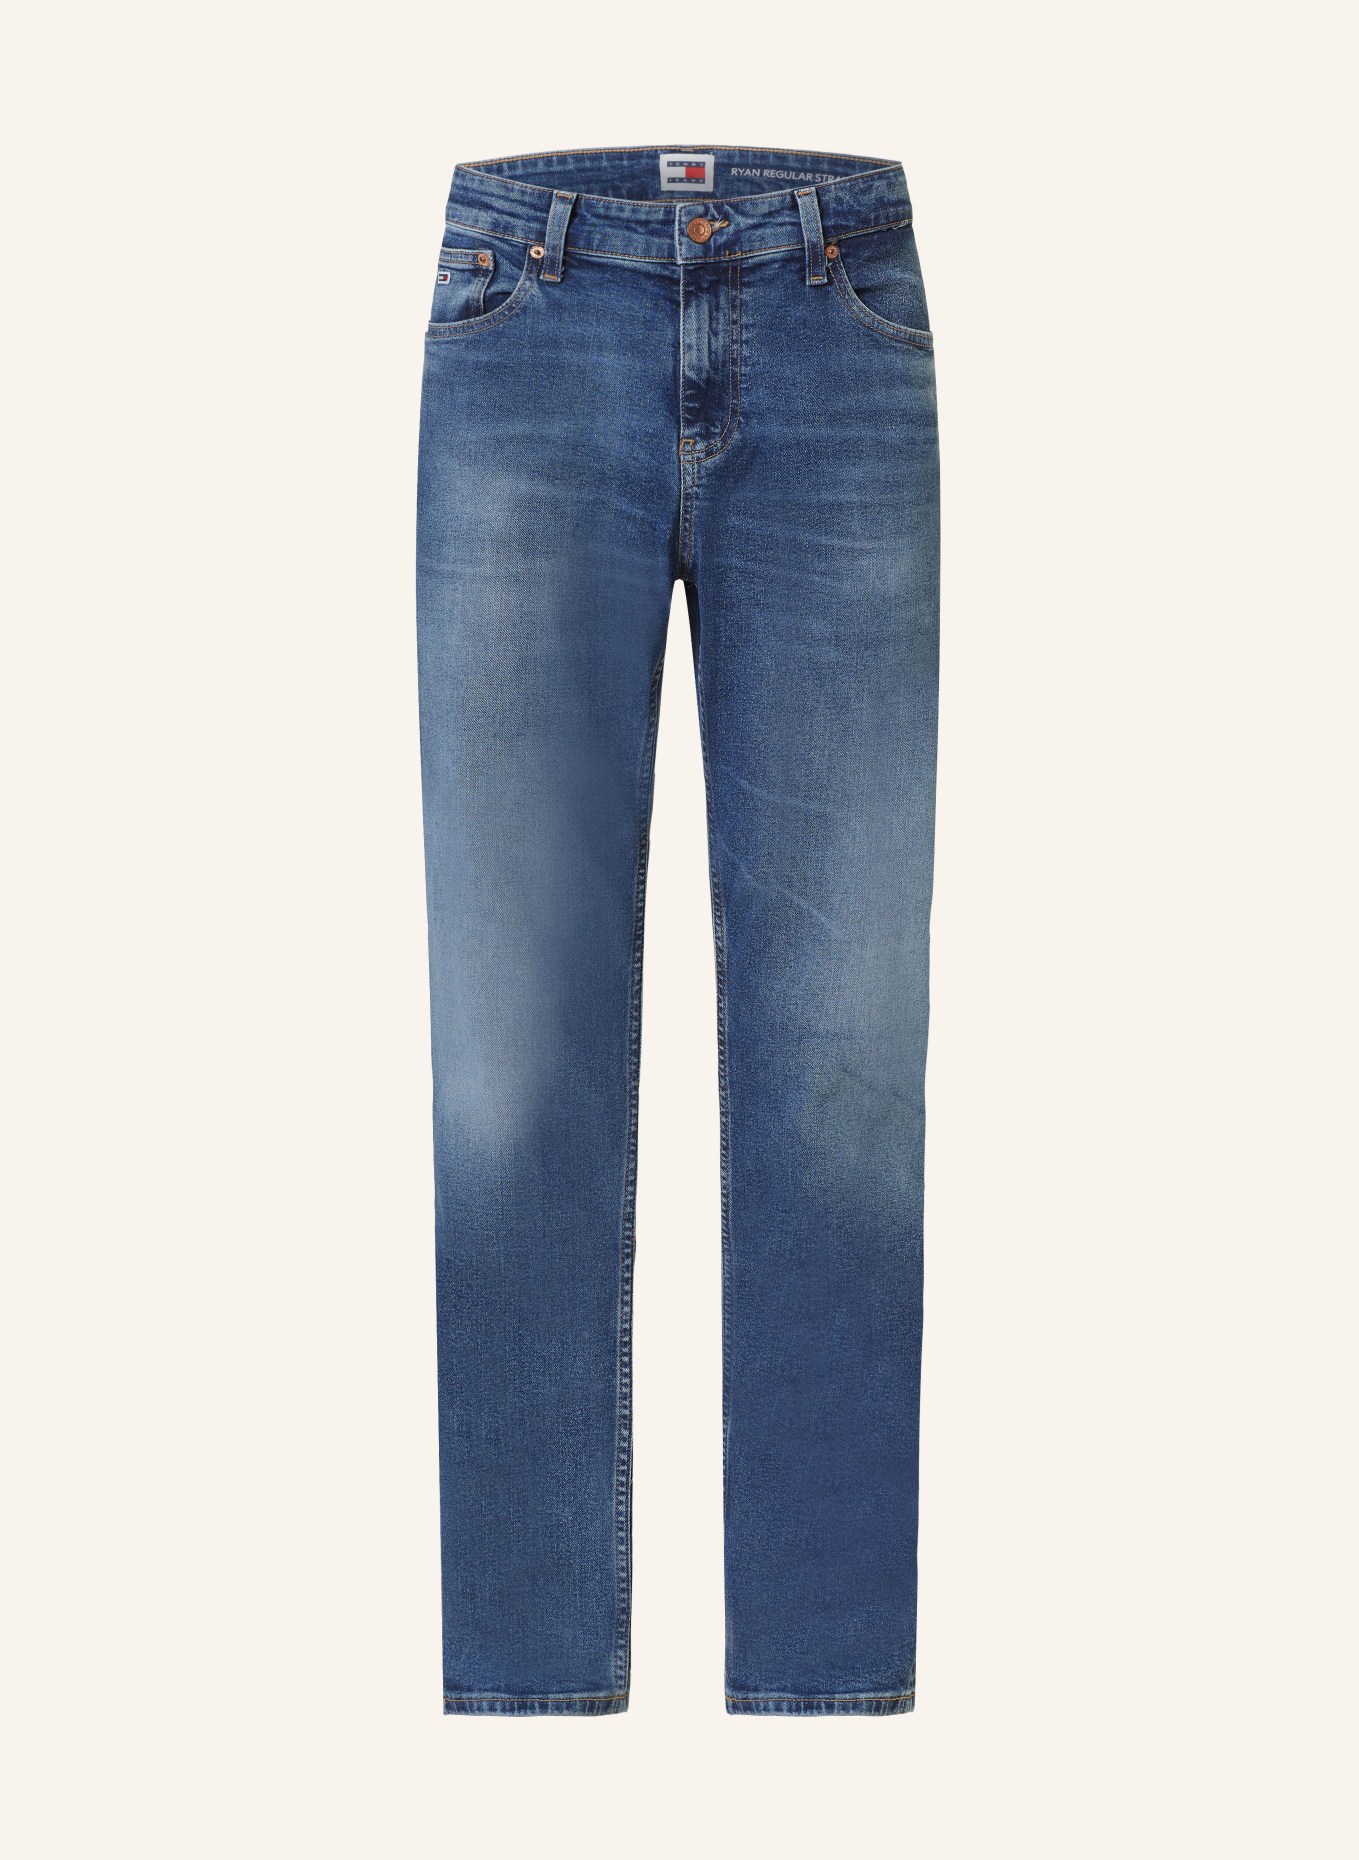 TOMMY JEANS Jeans RYAN Regular straight fit, Color: 1BK Denim Dark (Image 1)